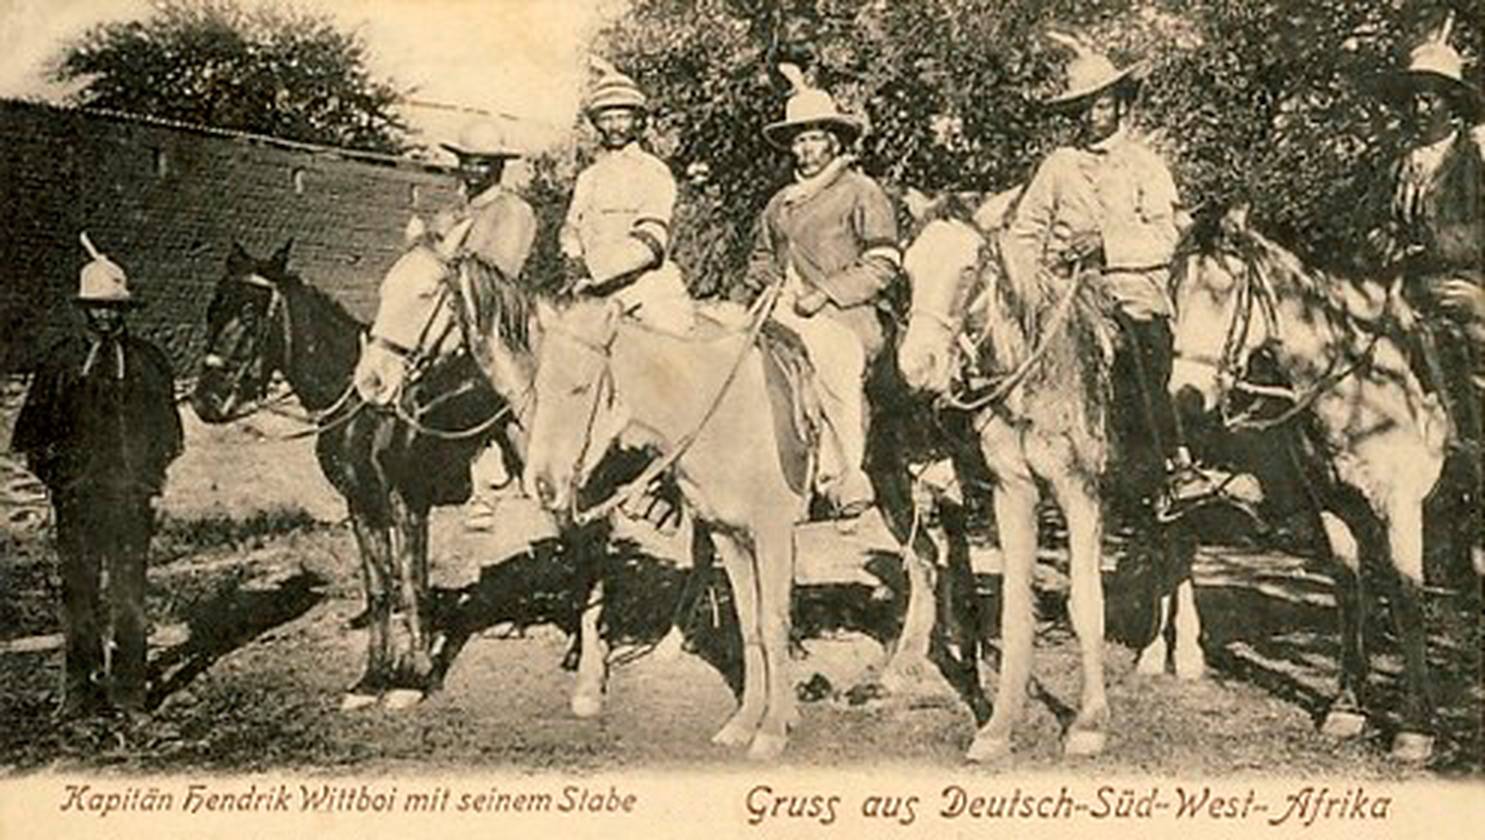 Вождь Нама Хендрик Витбуи (в центре) и его товарищи